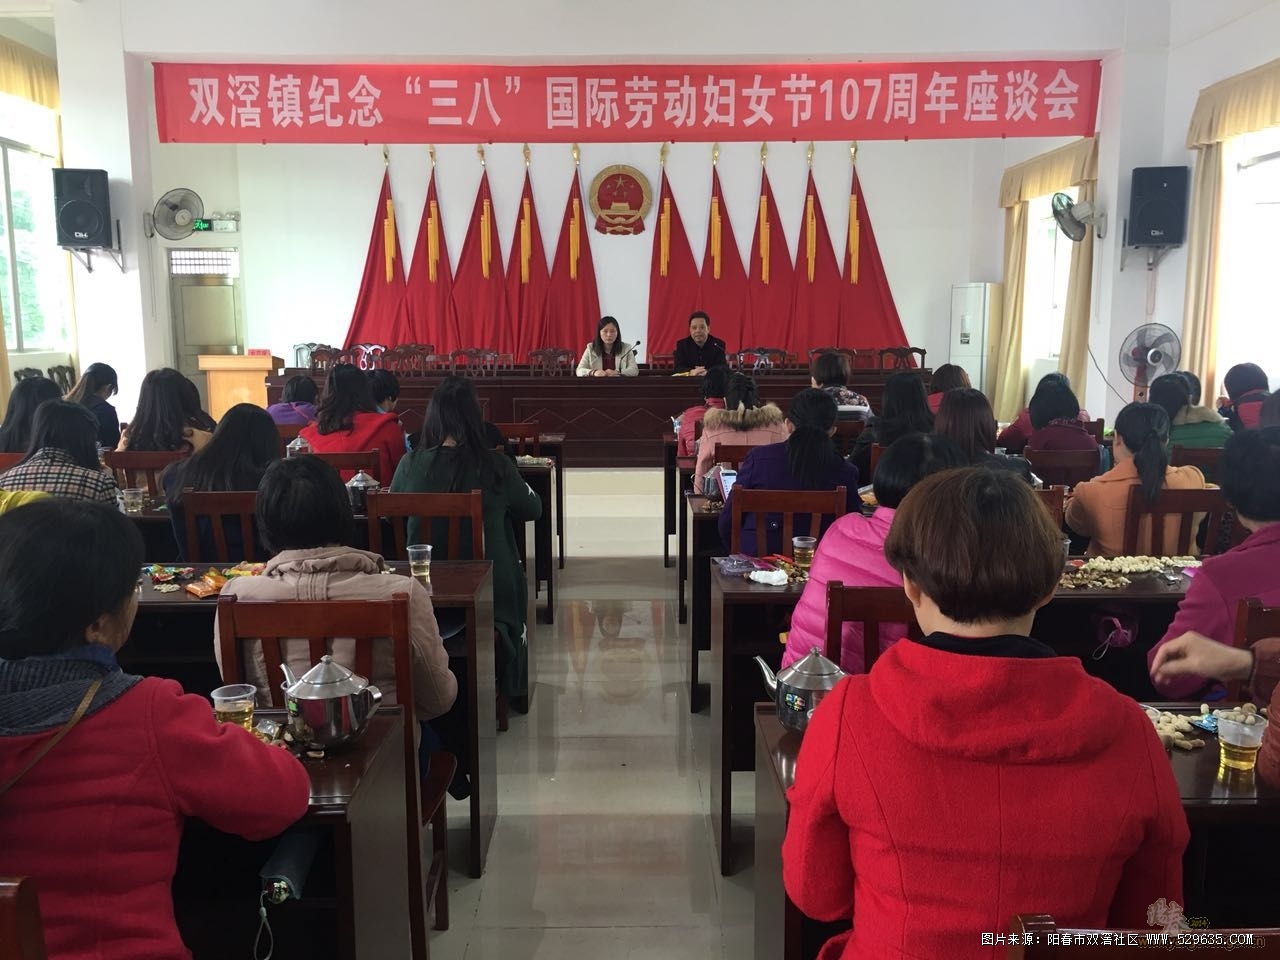 双滘镇妇联举办了庆祝“三八”国际劳动妇女节107周年座谈会